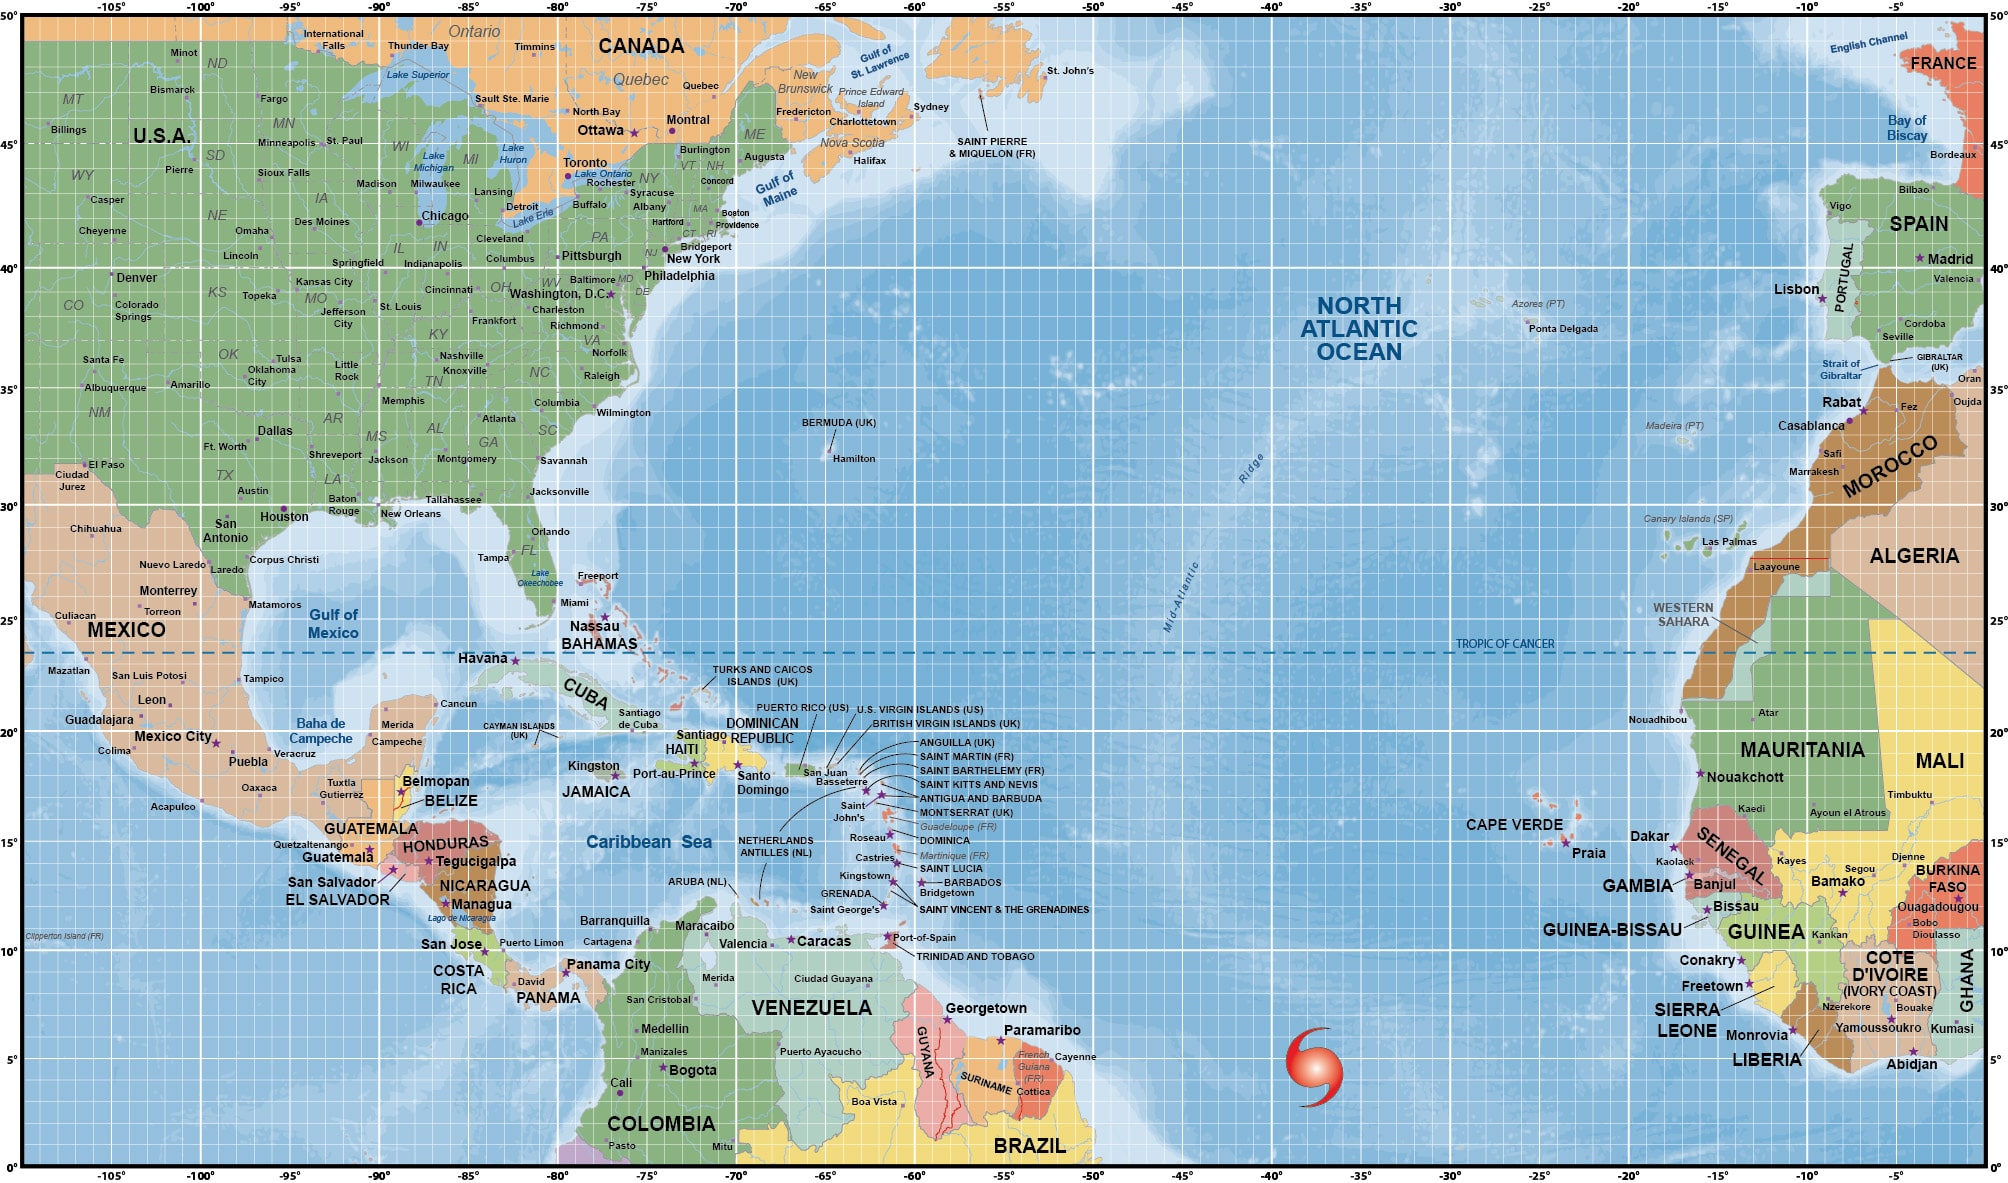 Atlantic Ocean Hurricane Tracking Map 